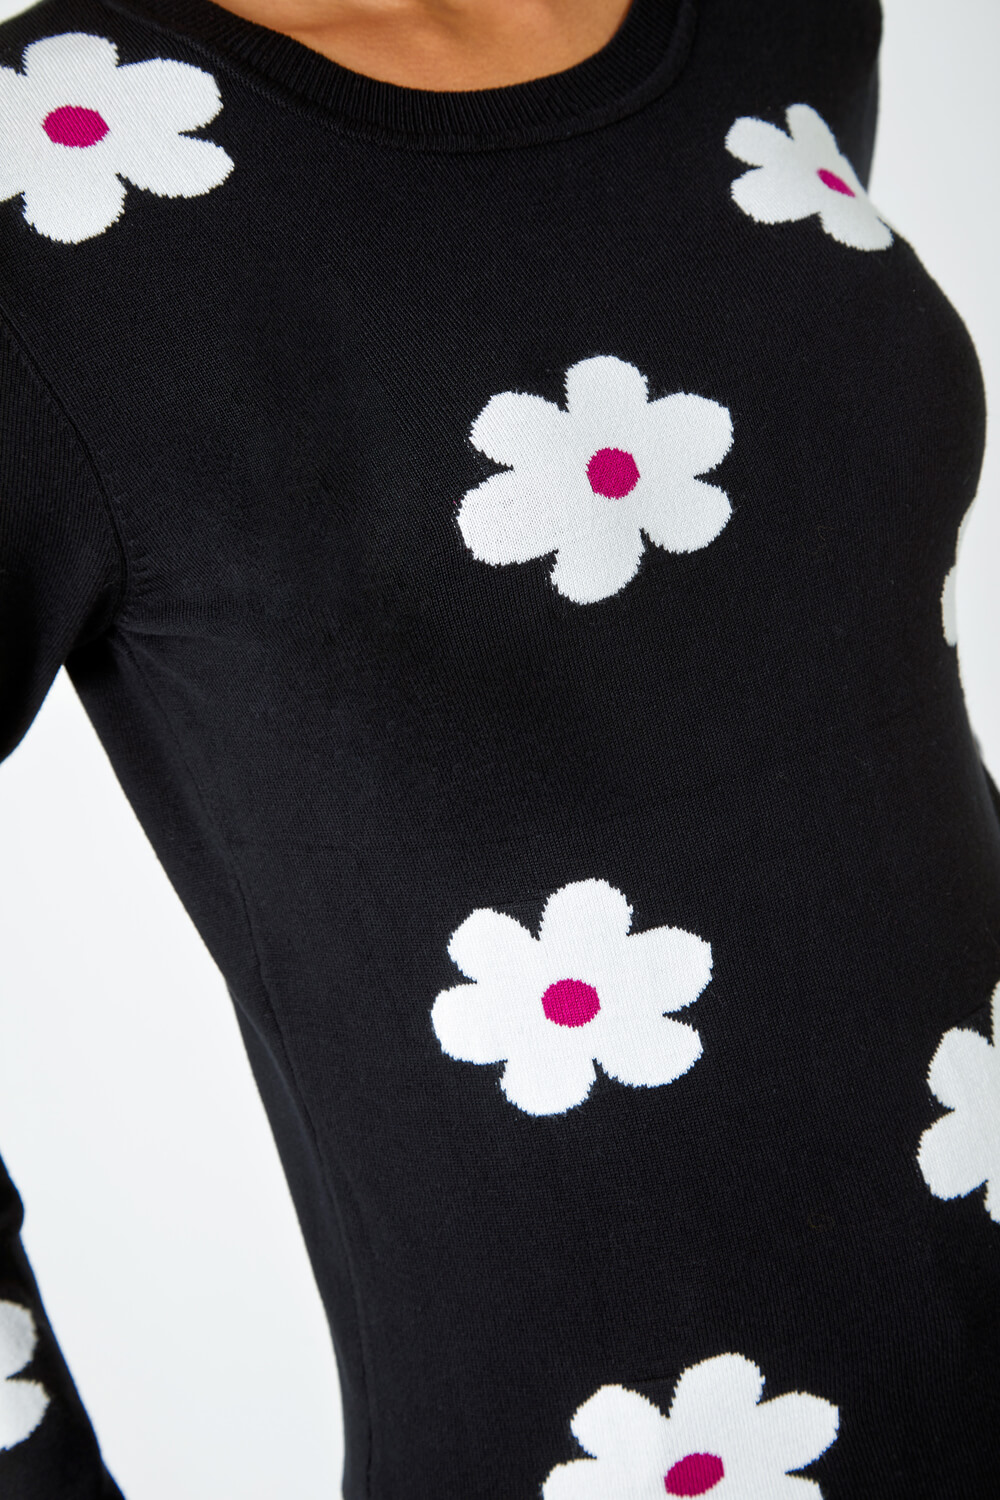 Black Floral Jacquard Stretch Knit Jumper, Image 5 of 5